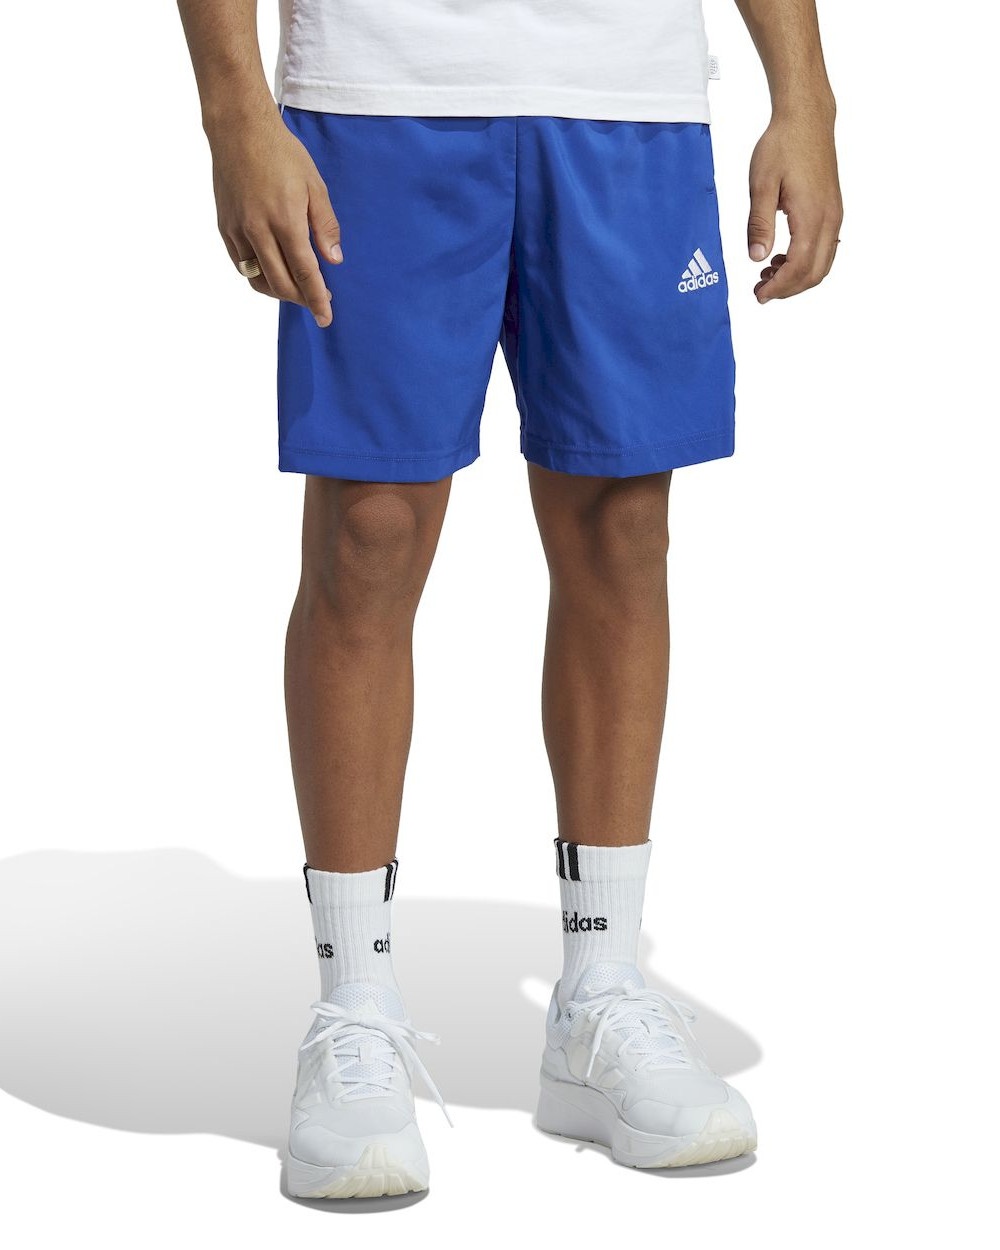  Pantaloncini Shorts UOMO Adidas 3 Stripes Chelsea Woven Azzurro con tasche